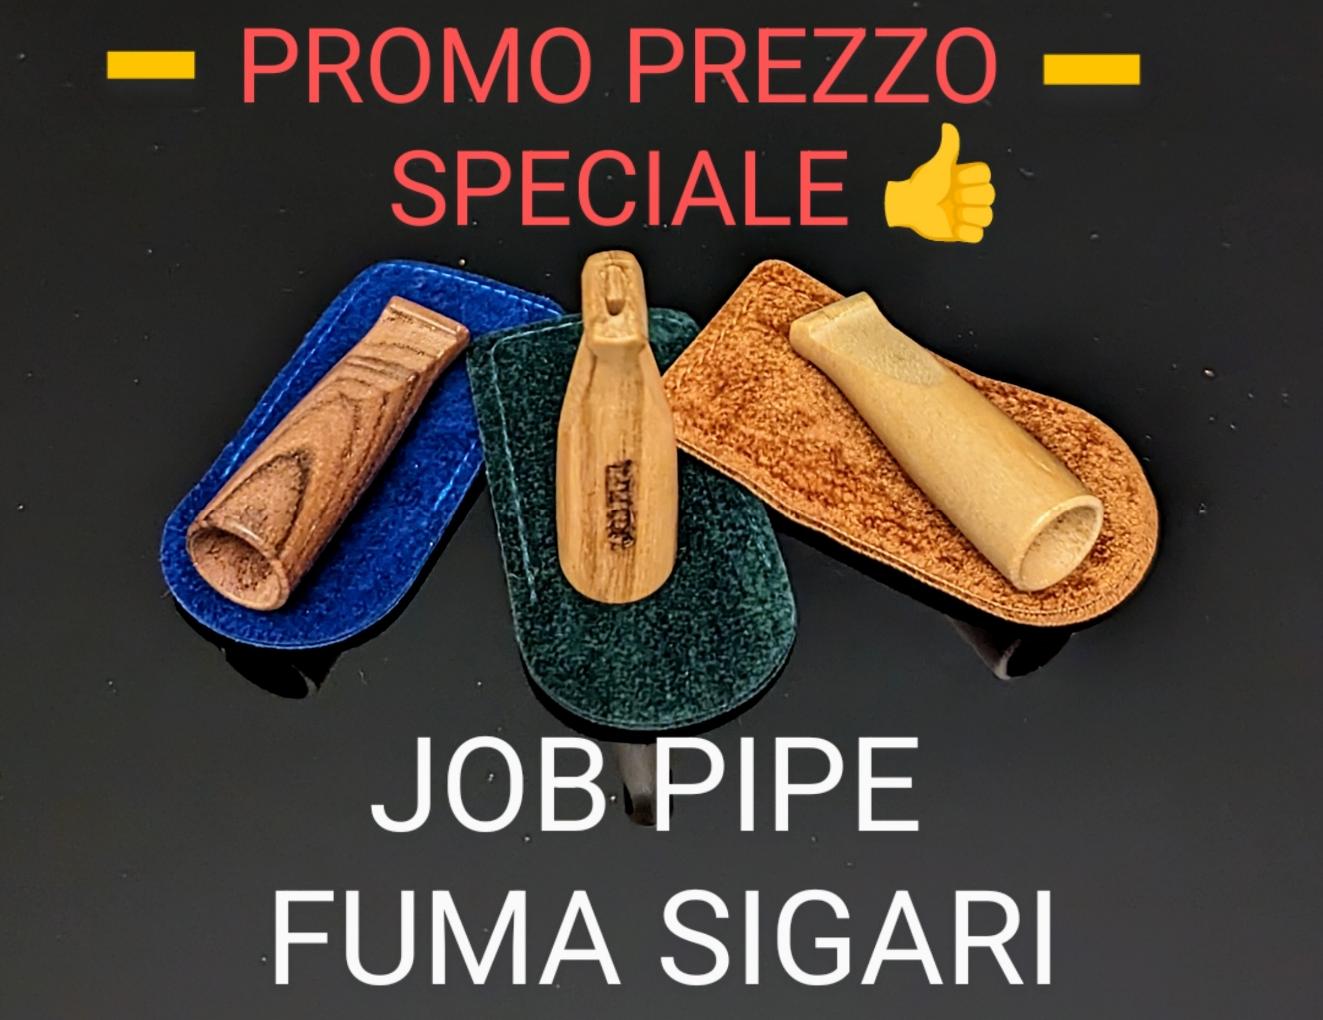 Job Pipe PROMO 3 Fuma Sigari Prezzo Speciale